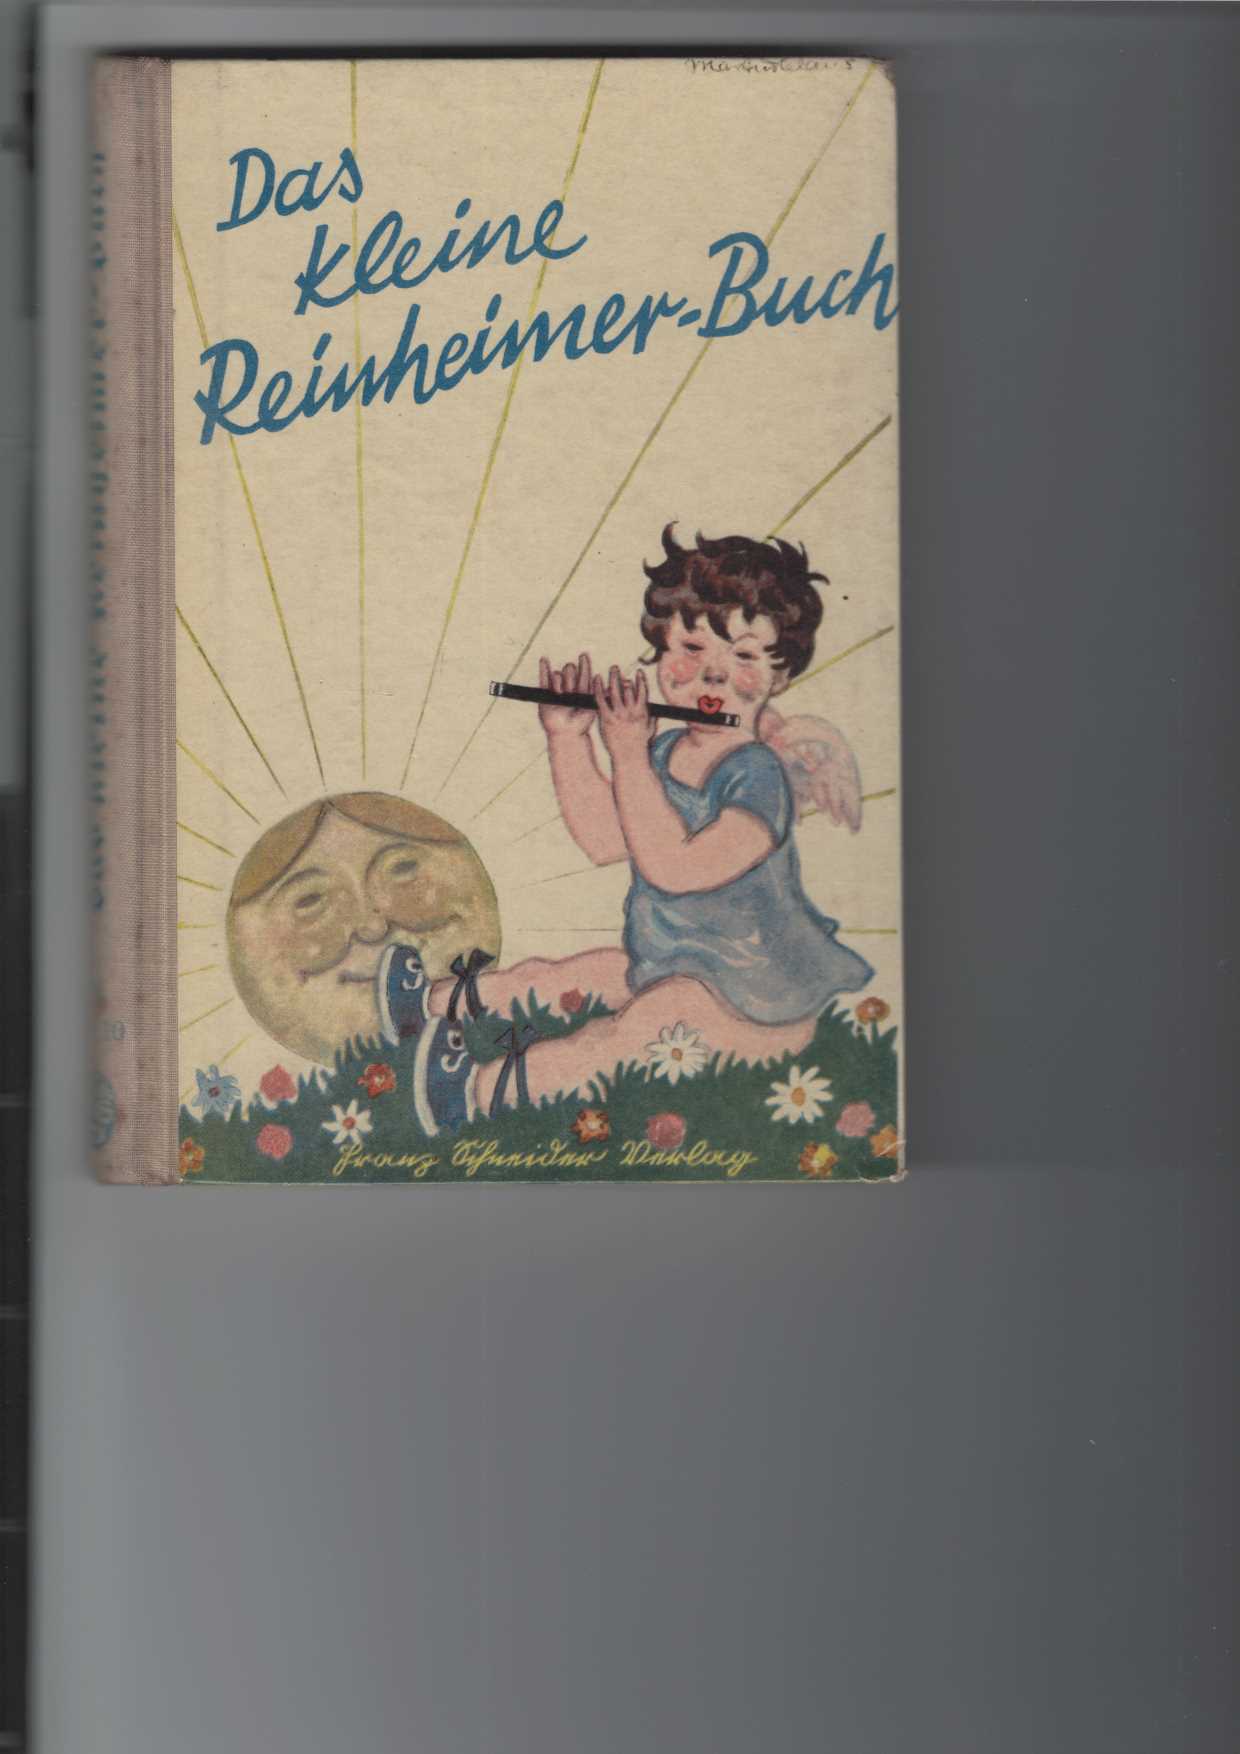 Das kleine Reinheimer-Buch.